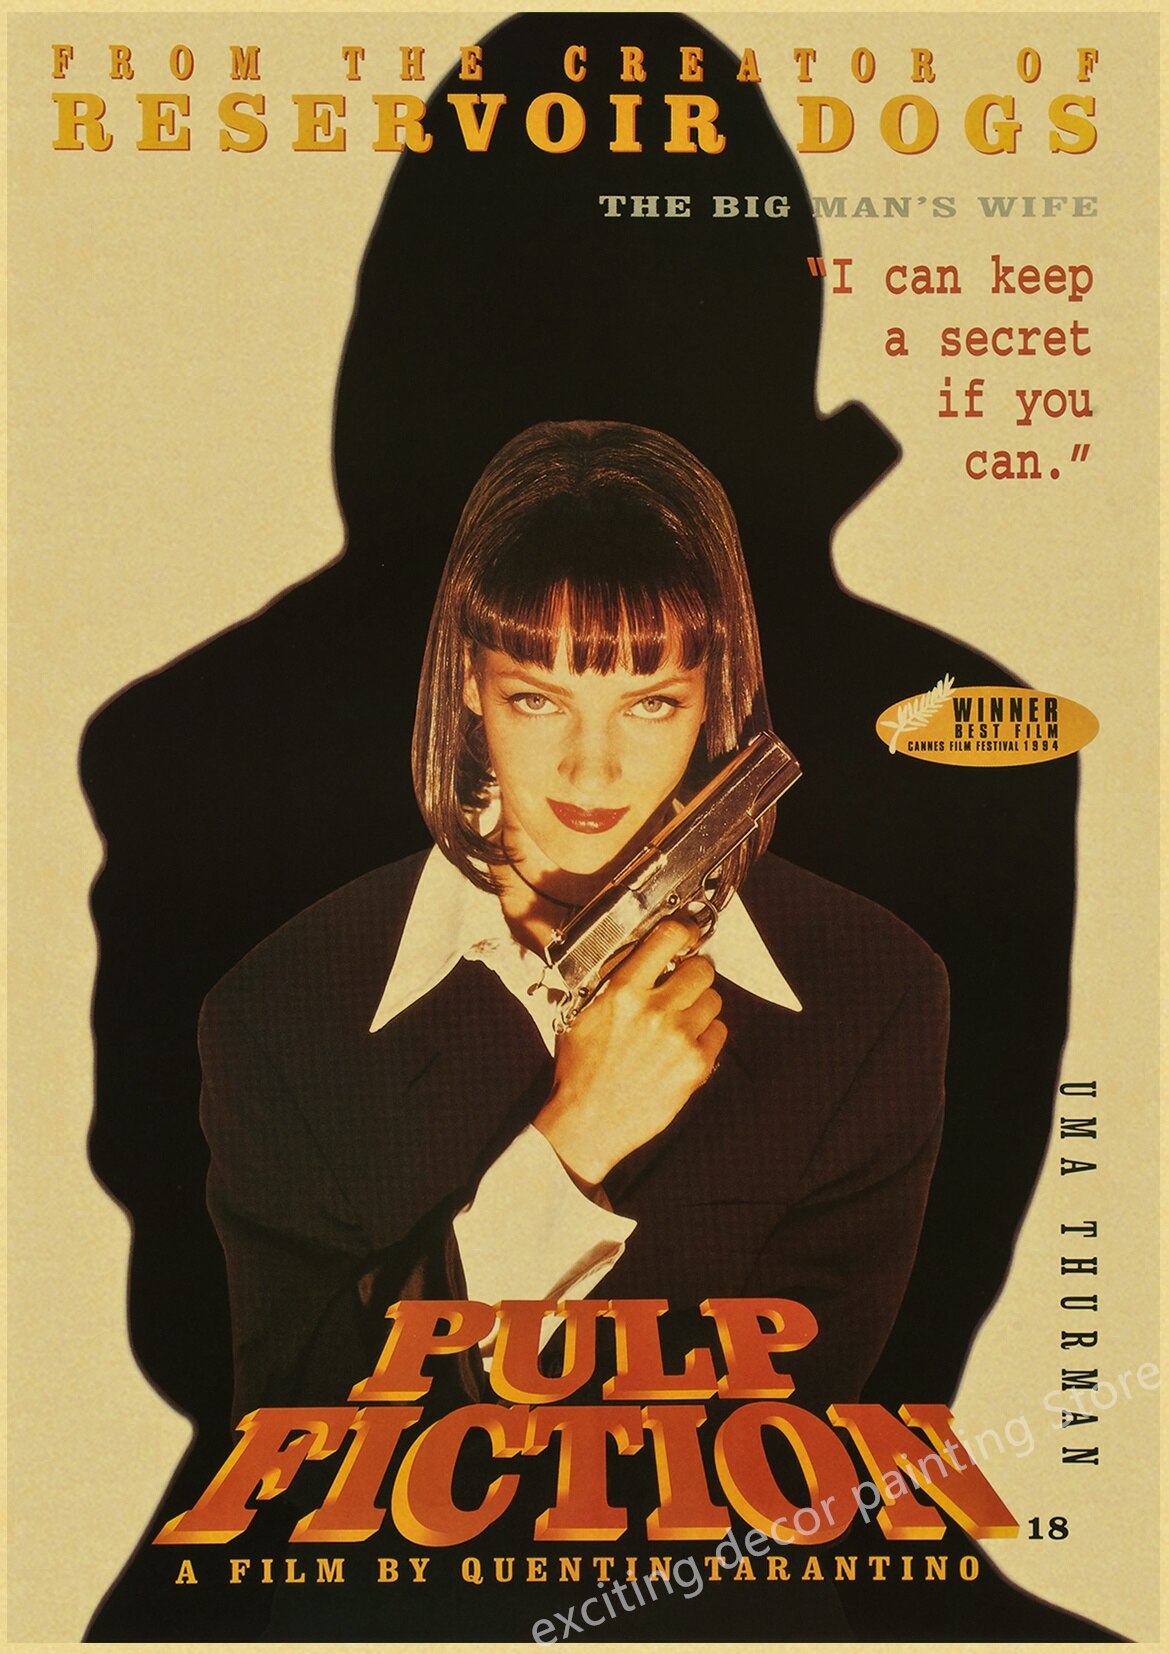 Pulp Fiction affiches et impressions par Magnificent art - Printler